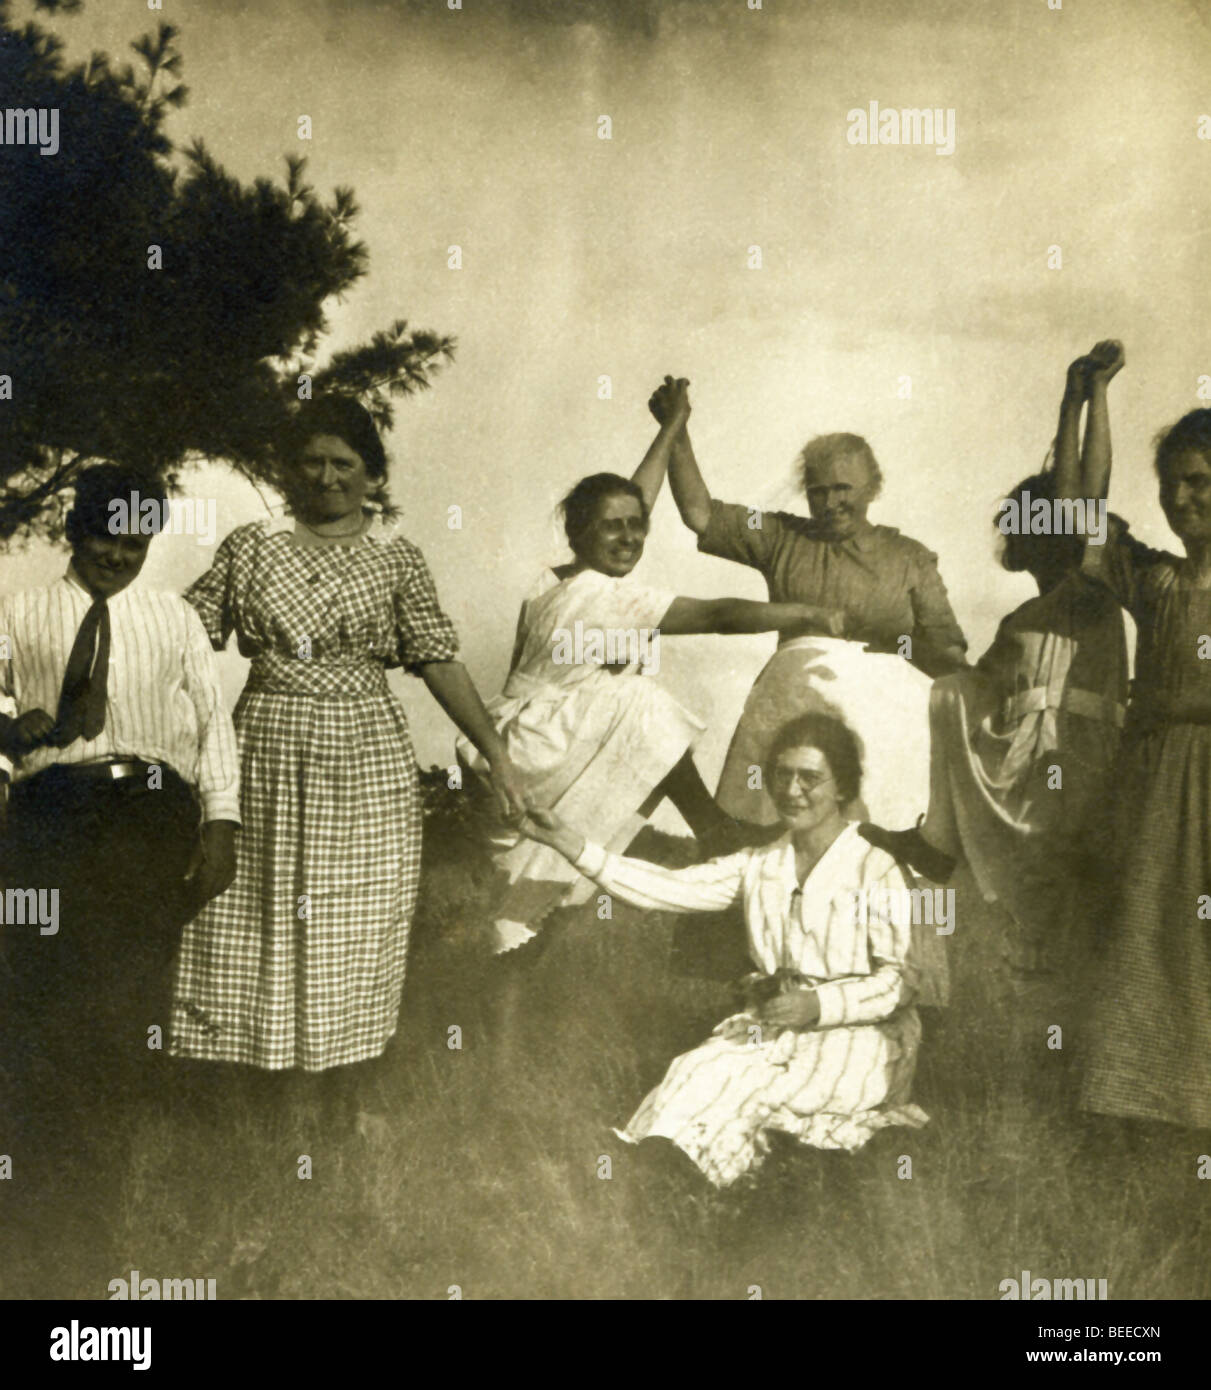 Esta escena de la familia y los amigos en una granja se remonta a principios de 1900 en el extremo norte de New Bedford, Massachusetts. Foto de stock